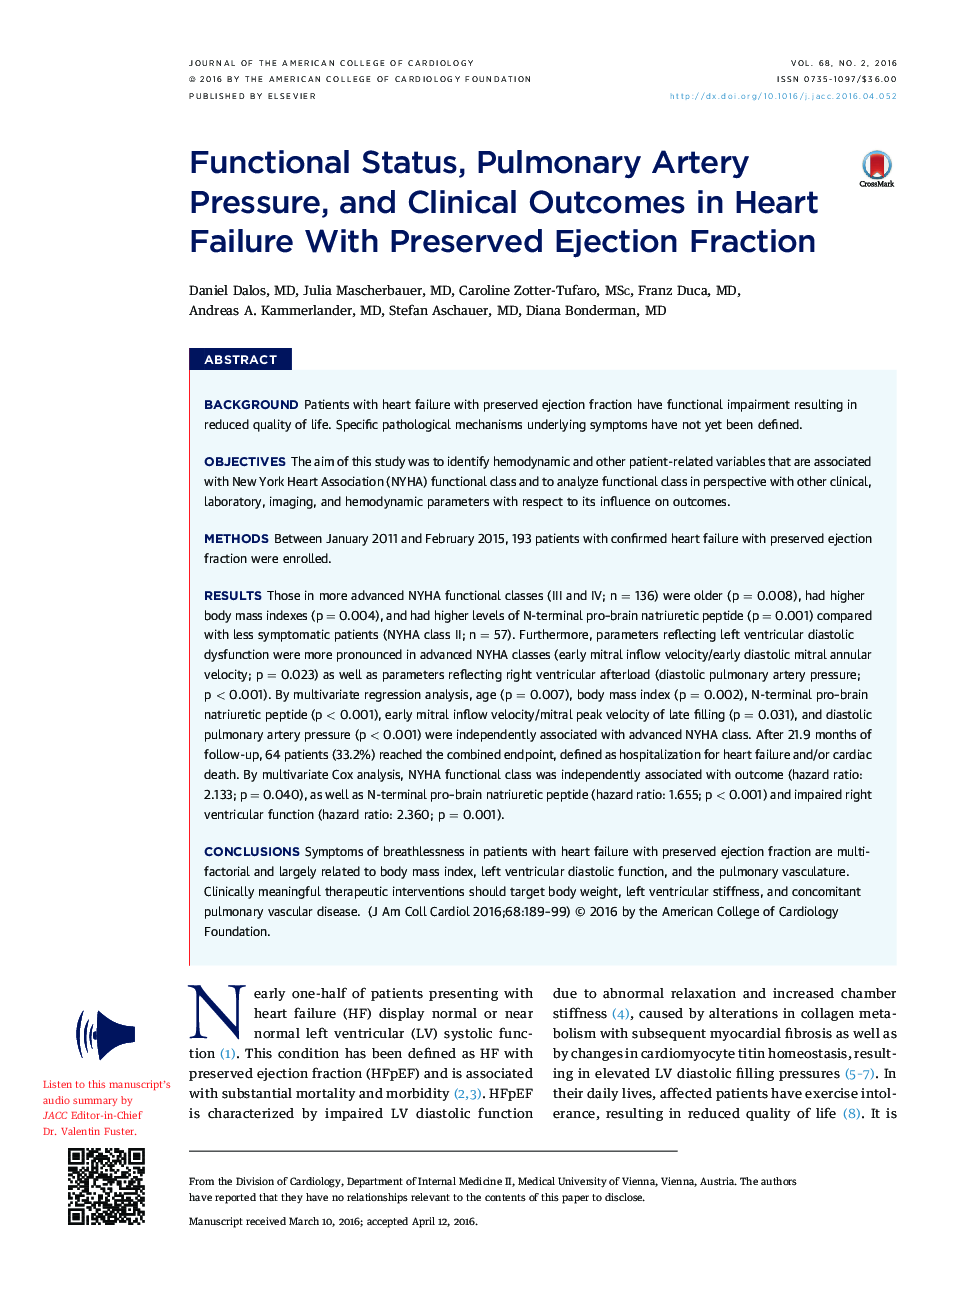 وضعیت عملکردی، فشار عروق ریوی و نتایج بالینی در نارسایی قلب با ضریب اکسیژن محافظت شده 